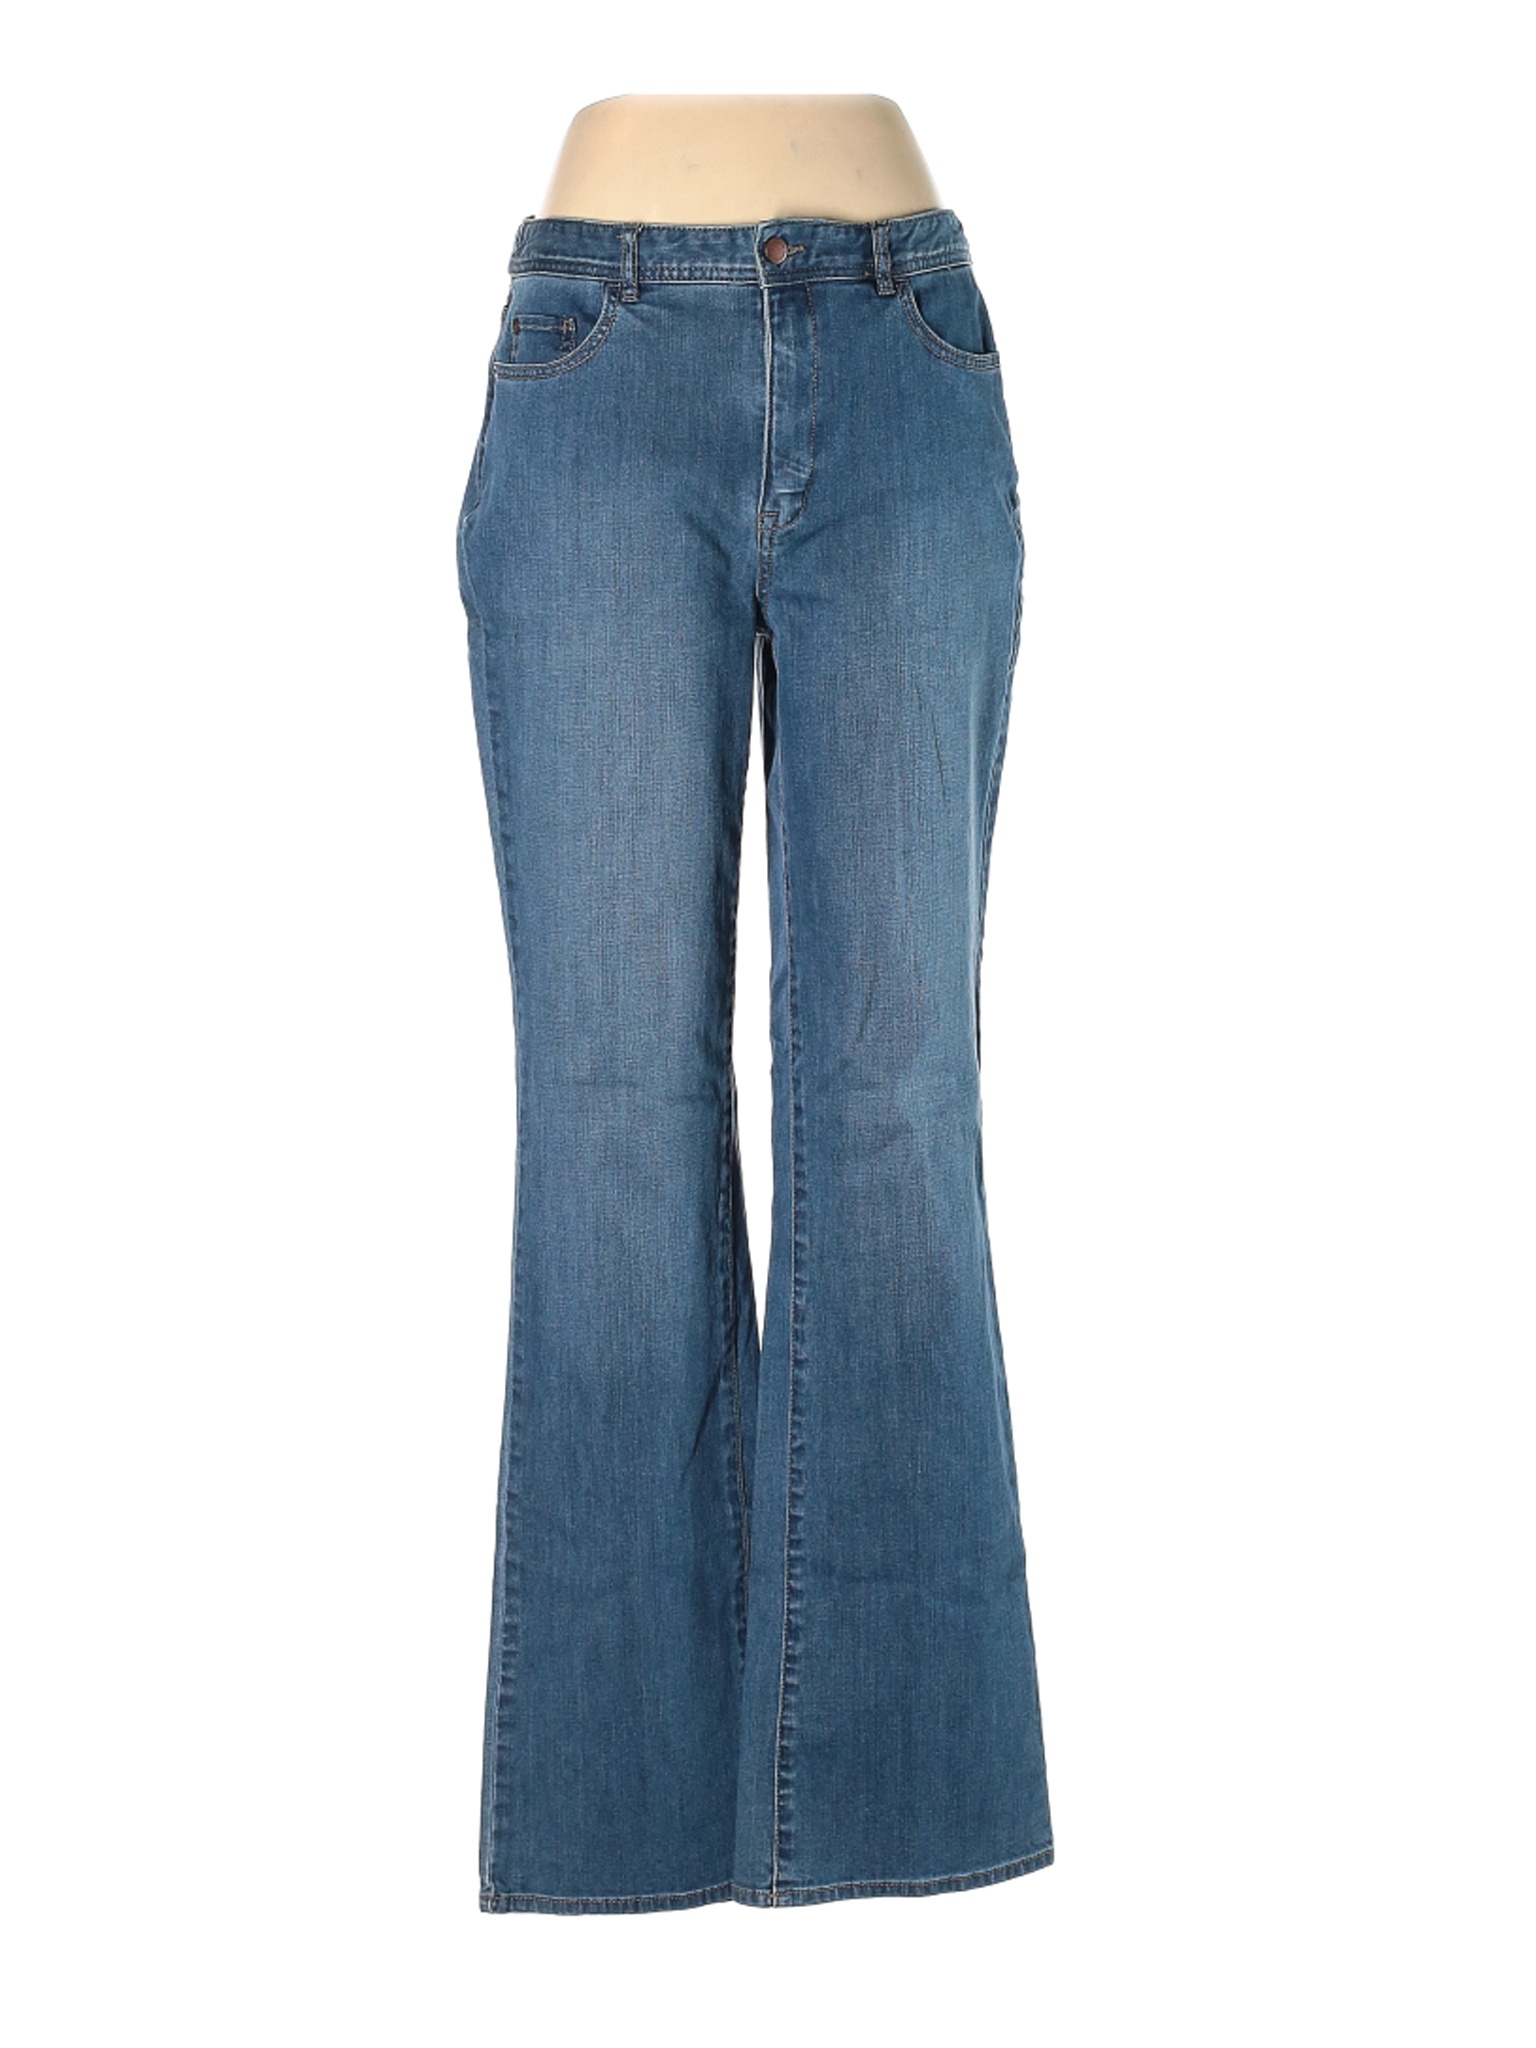 Coldwater Creek Women Blue Jeans 12 | eBay